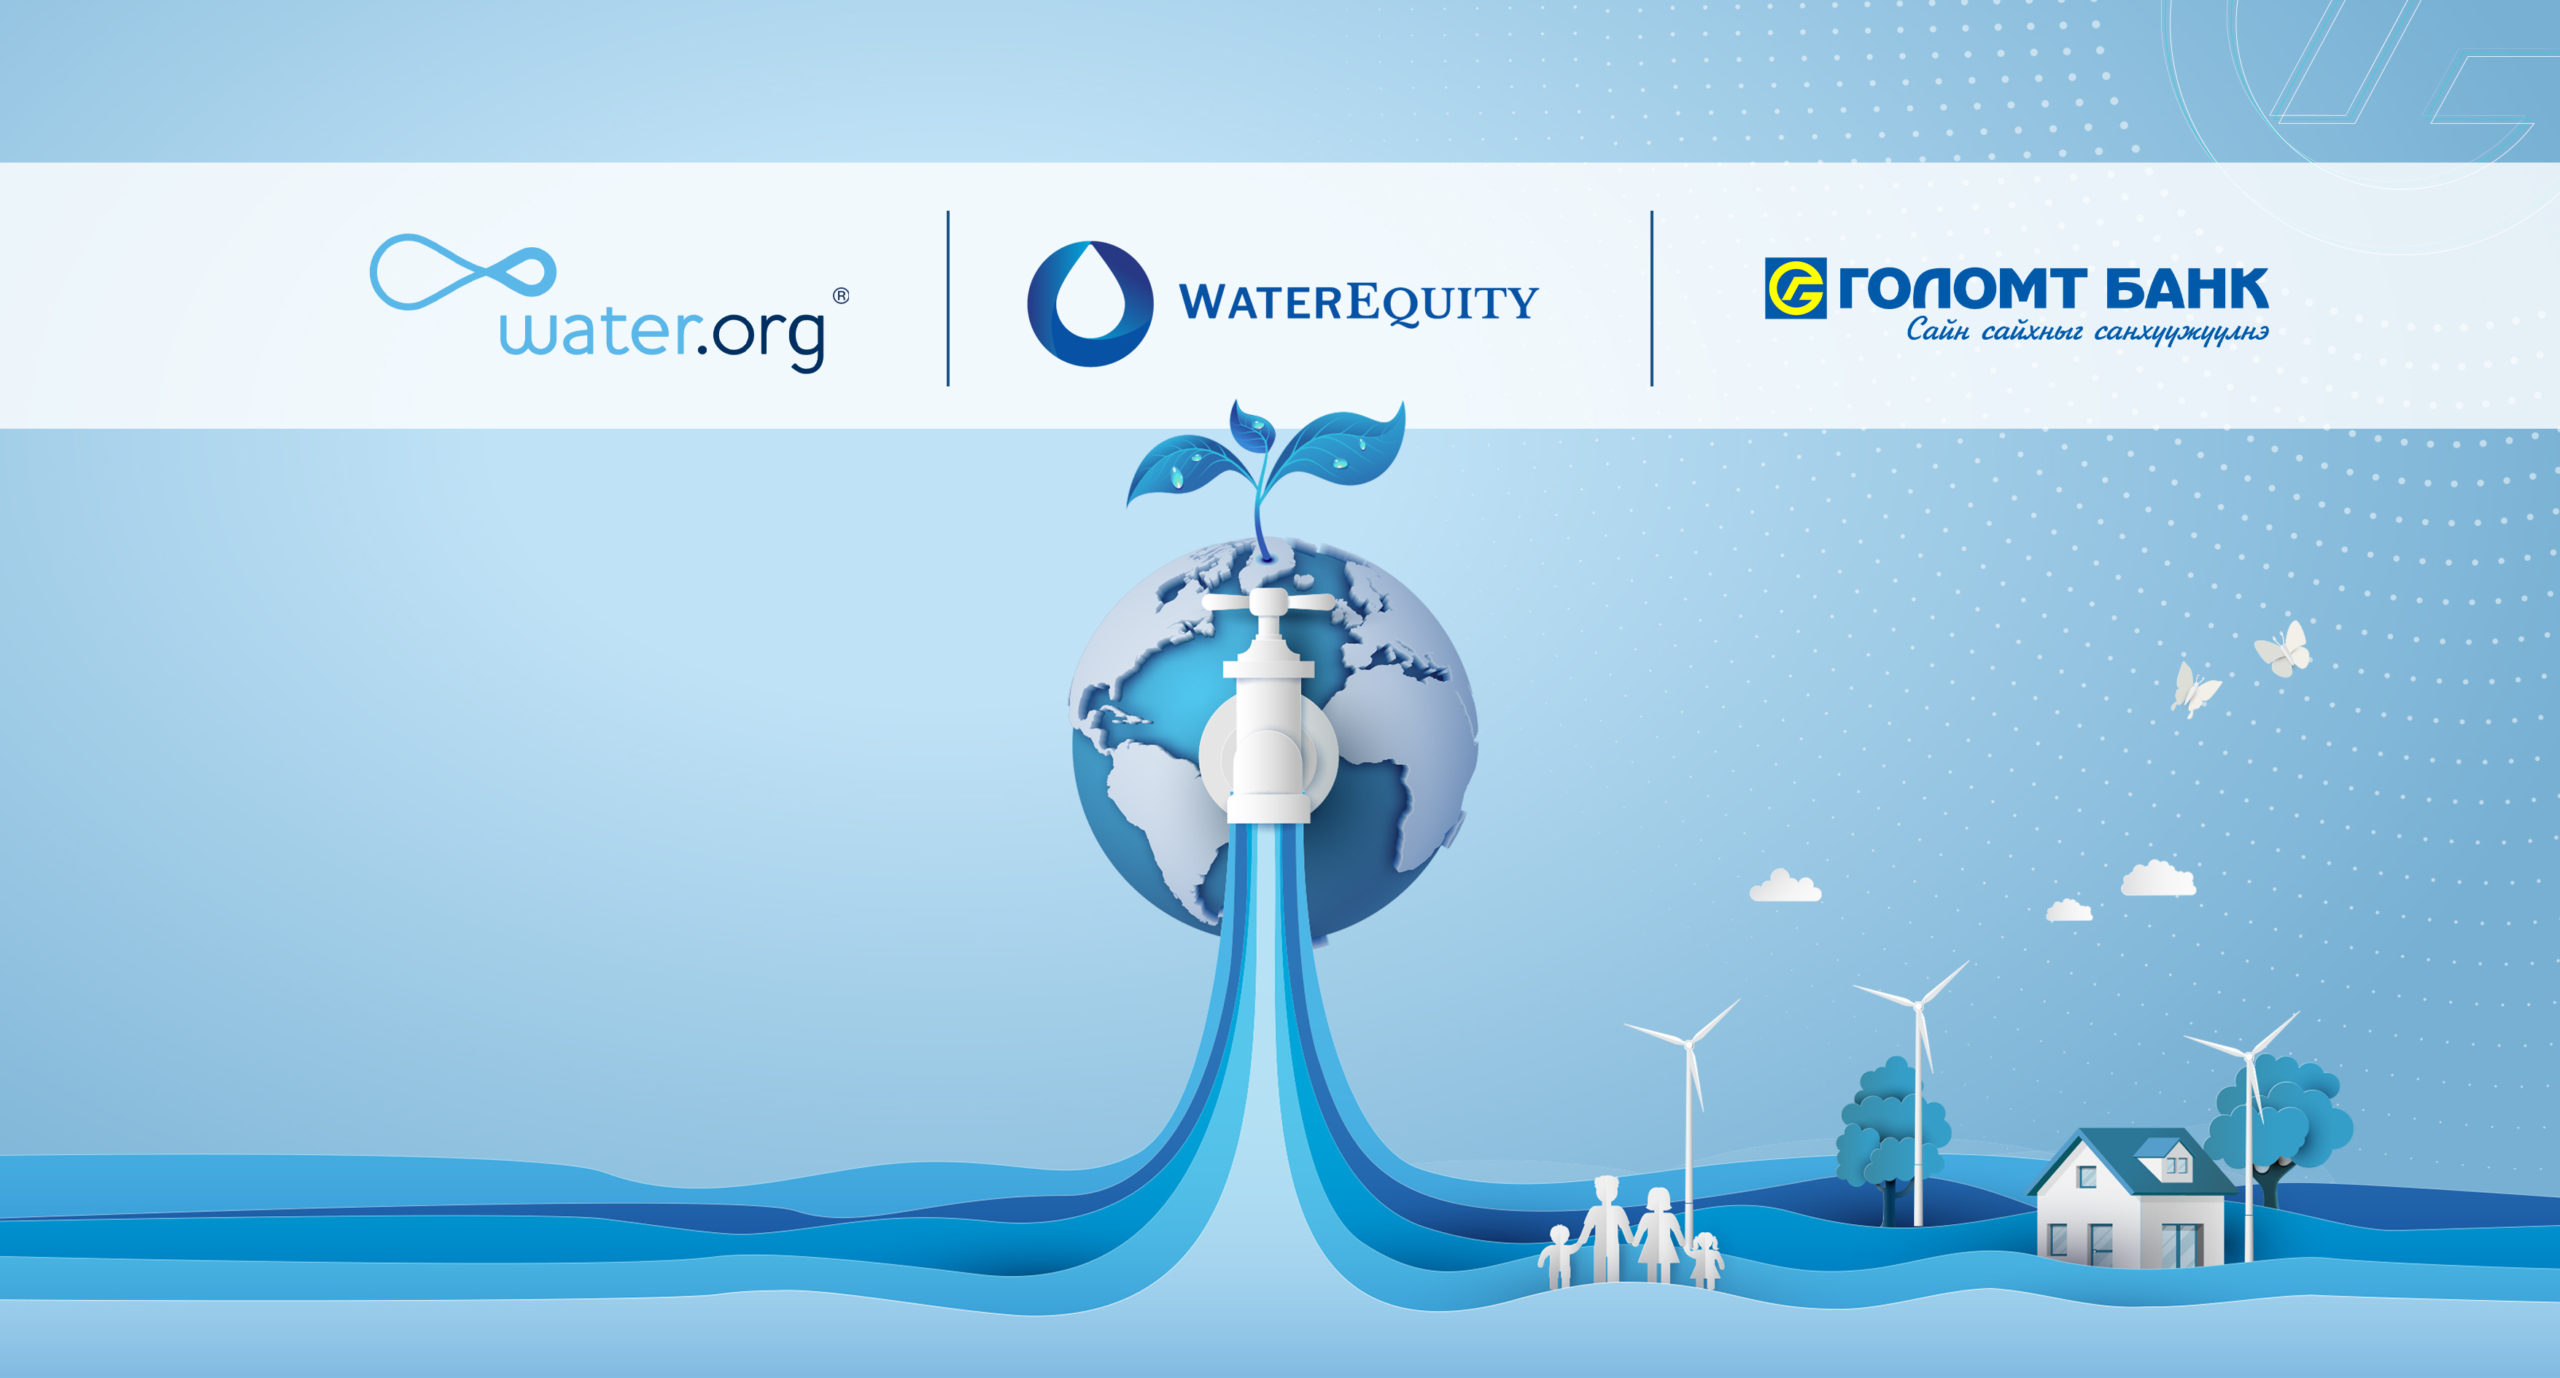 Голомт банк WaterEquity хамтран ус, ариун цэврийн байгууламжийн хүртээмжийг нэмэгдүүлэхээр ажиллаж байна